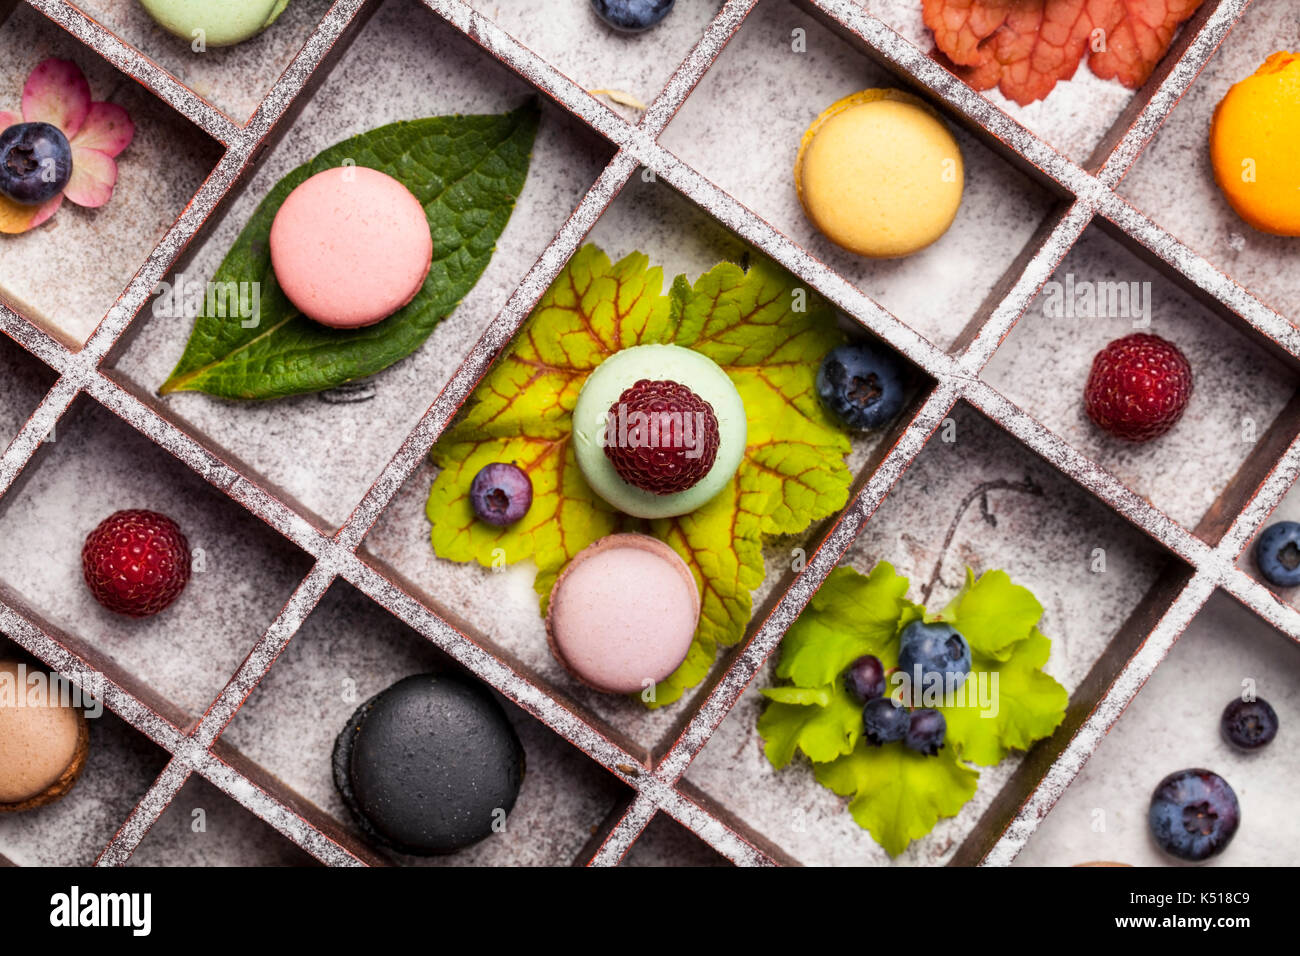 Vielfalt von bunten französischen süßes Dessert - makaron (les Macarons) mit Herbst Blumen und Beeren. Stockfoto